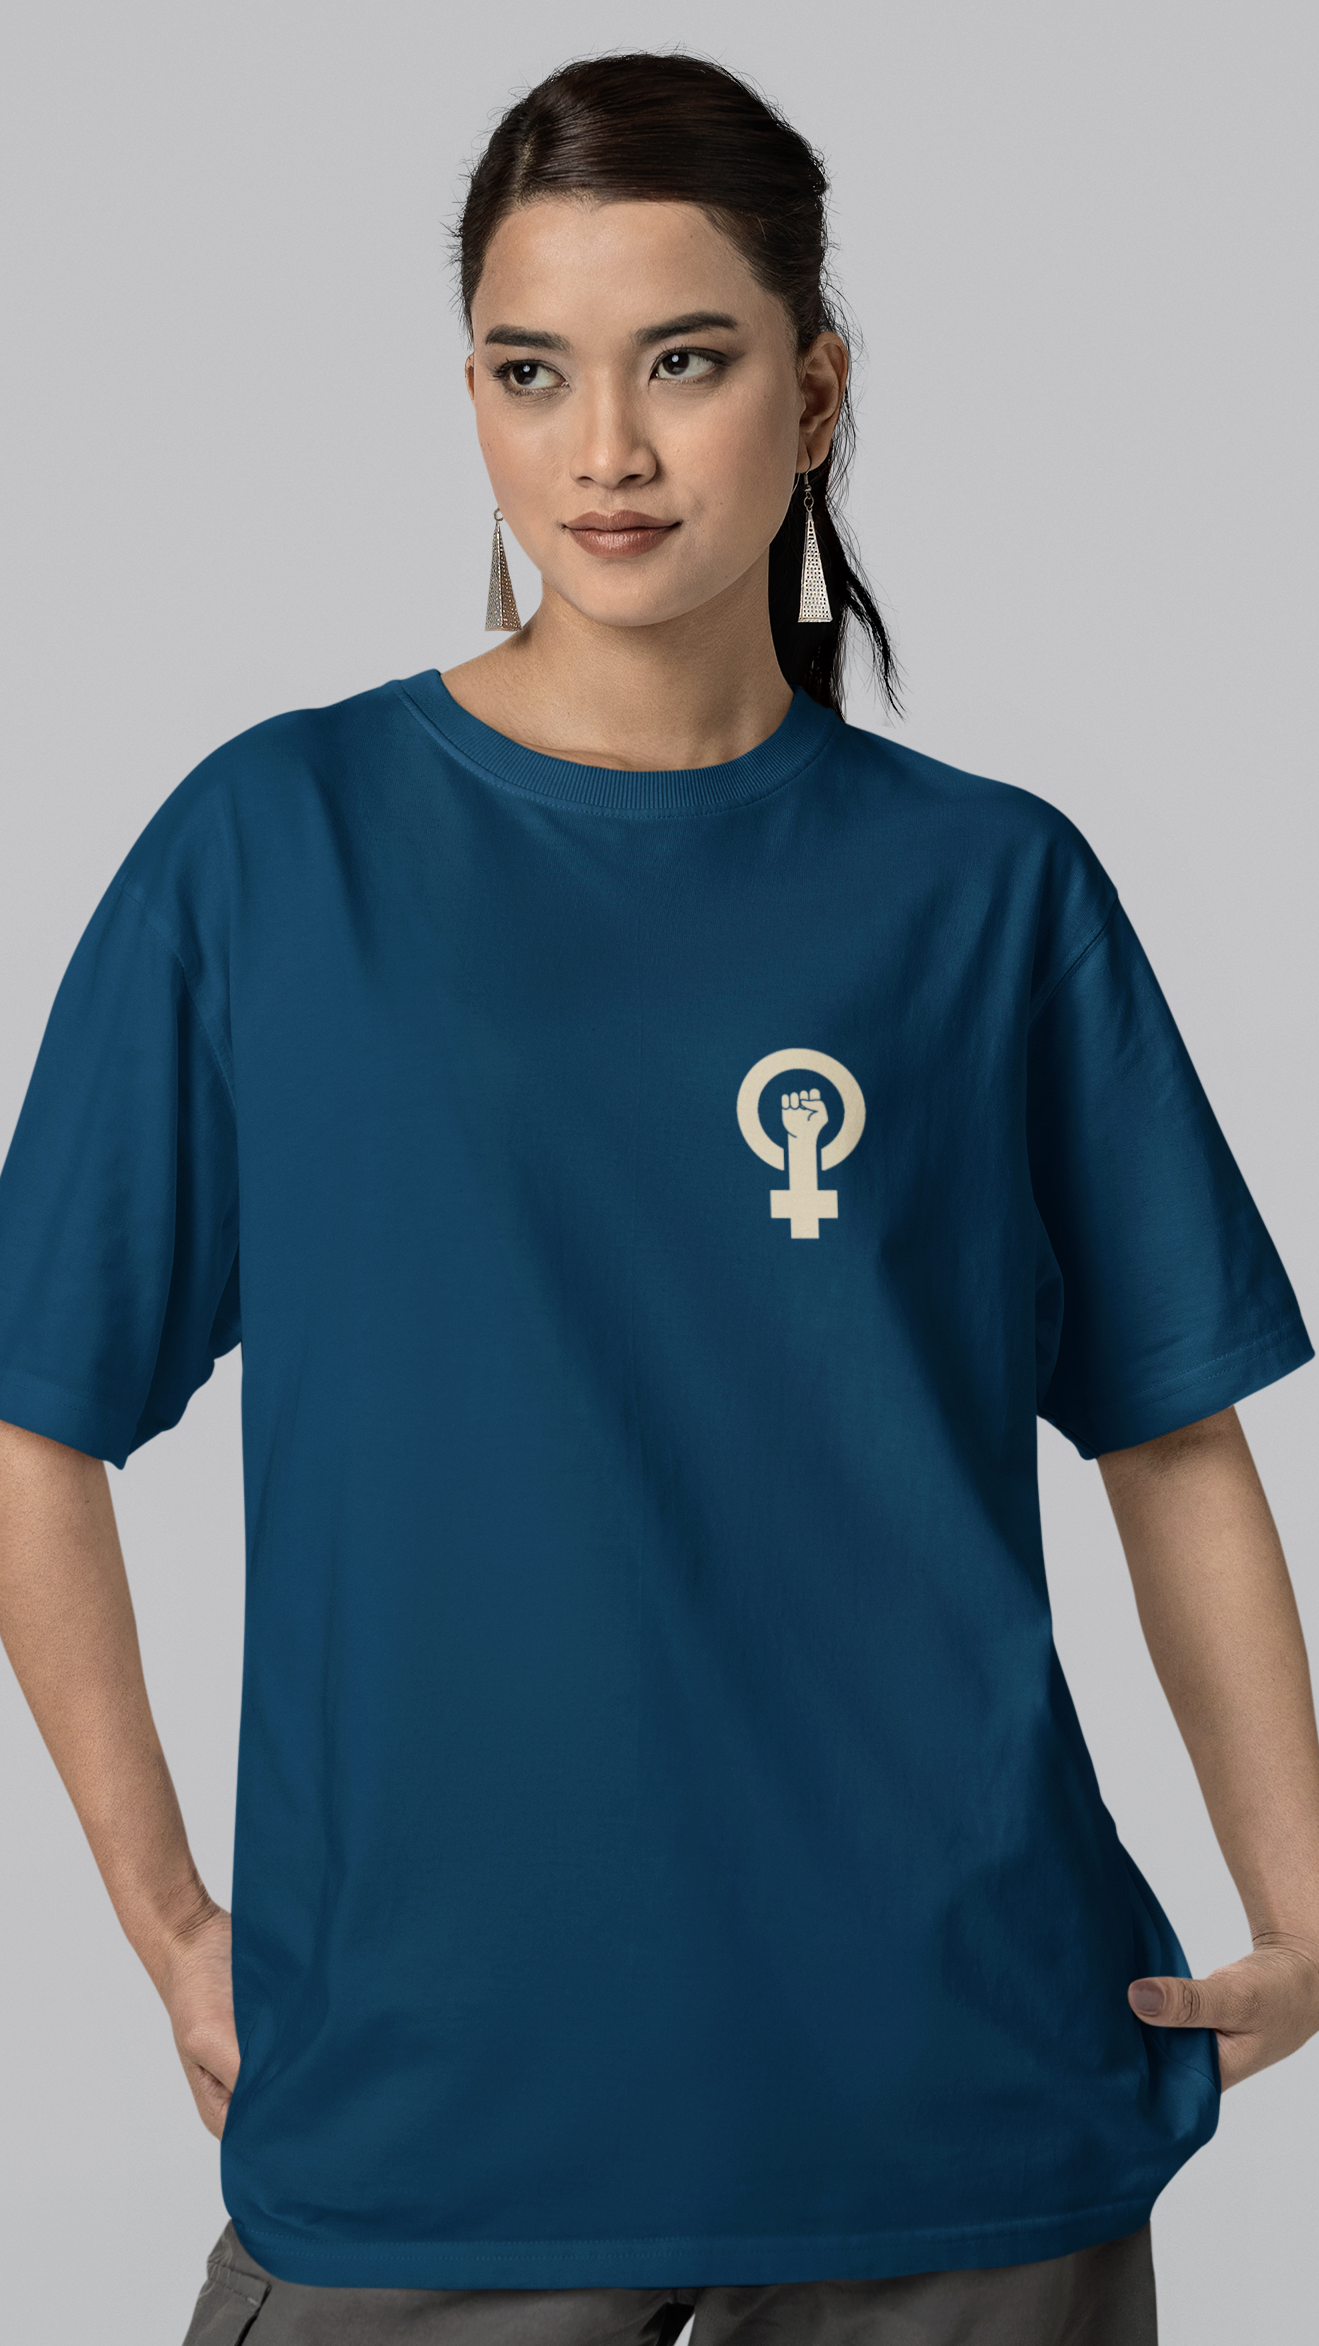 Bilkool Cat Girl Oversized T-Shirt for Women